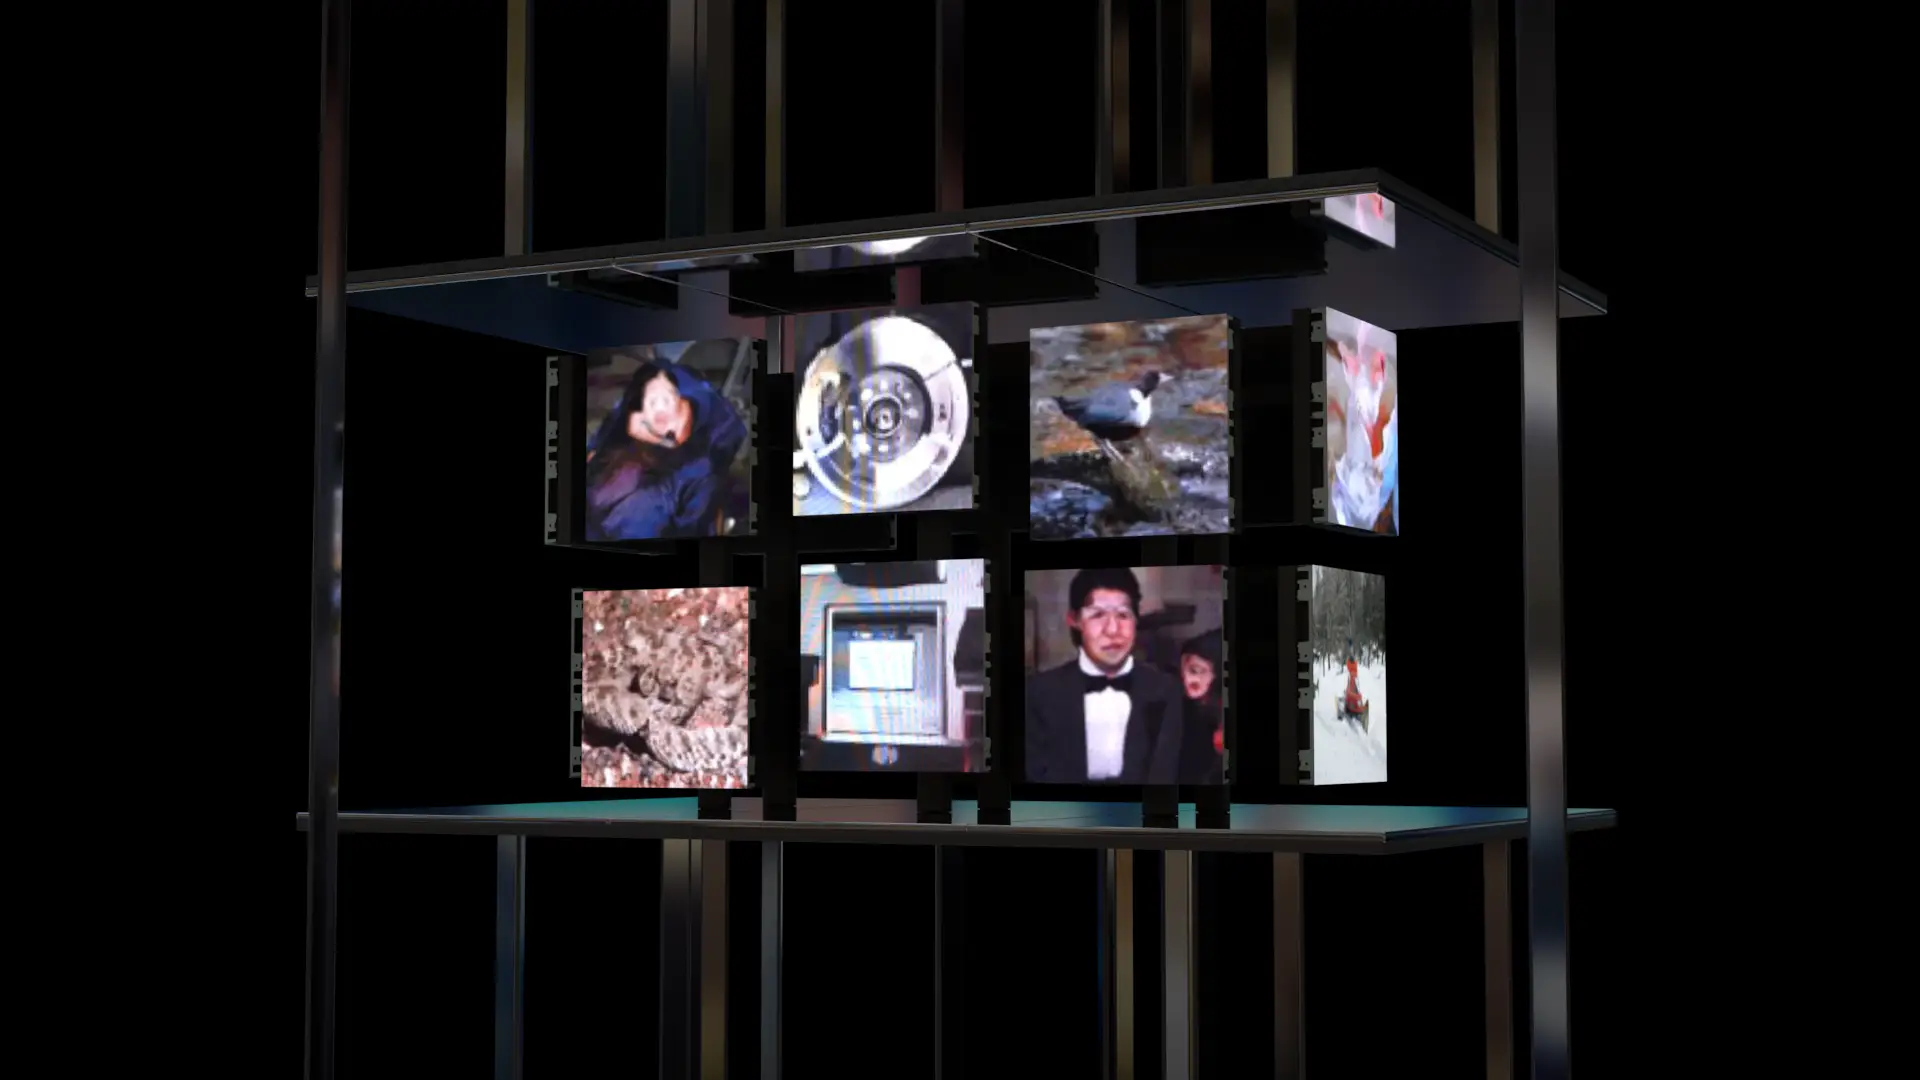 2019年11月14日（木）から日本科学未来館で一般公開された落合陽一氏総合監修の常設展示「計算機と自然、計算機の自然」へ、GAN（敵対的生成ネットワーク）を用いたモーフィング映像が採用